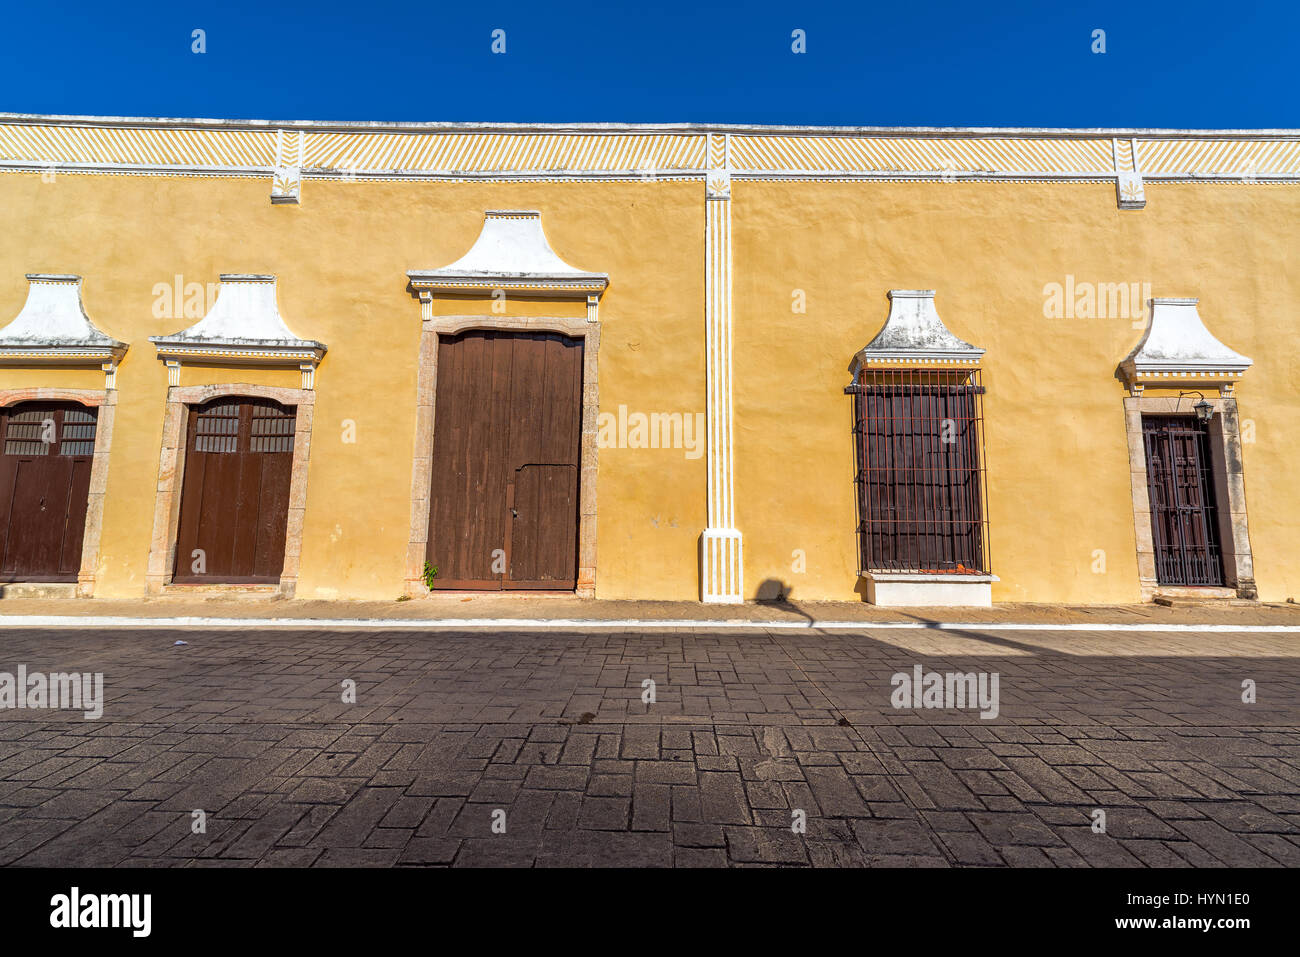 L'architecture coloniale jaune dans le centre de Valladolid, Mexique Banque D'Images